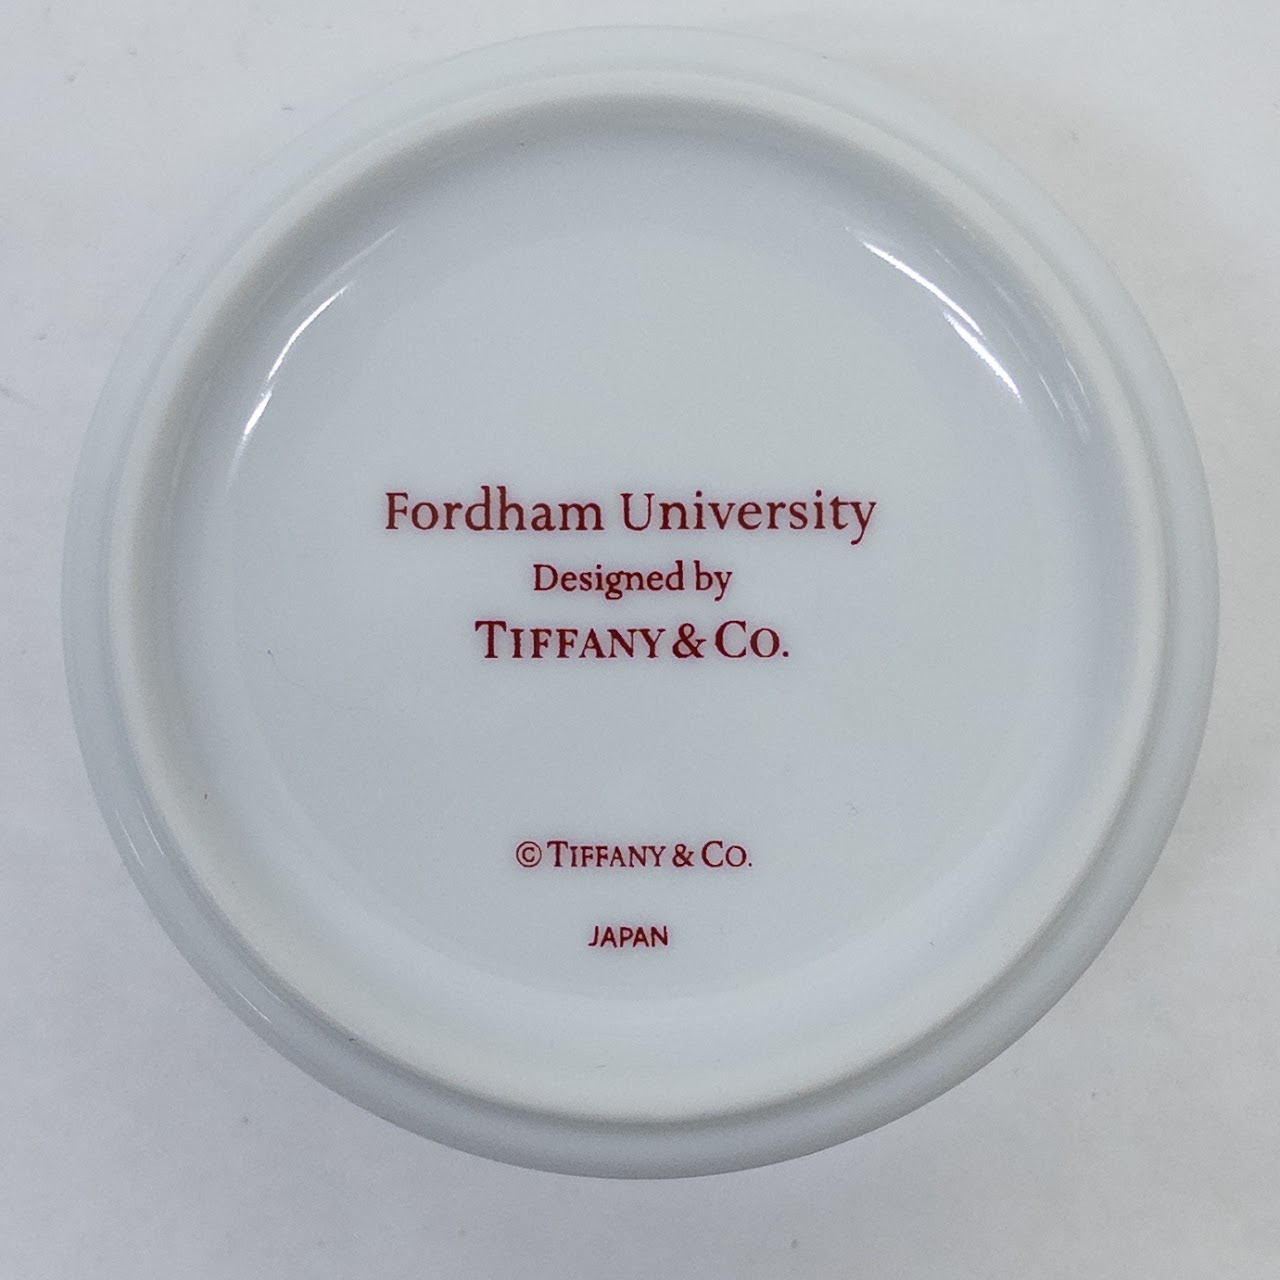 Tiffany & Co for Fordham University Lidded Smalls Dish